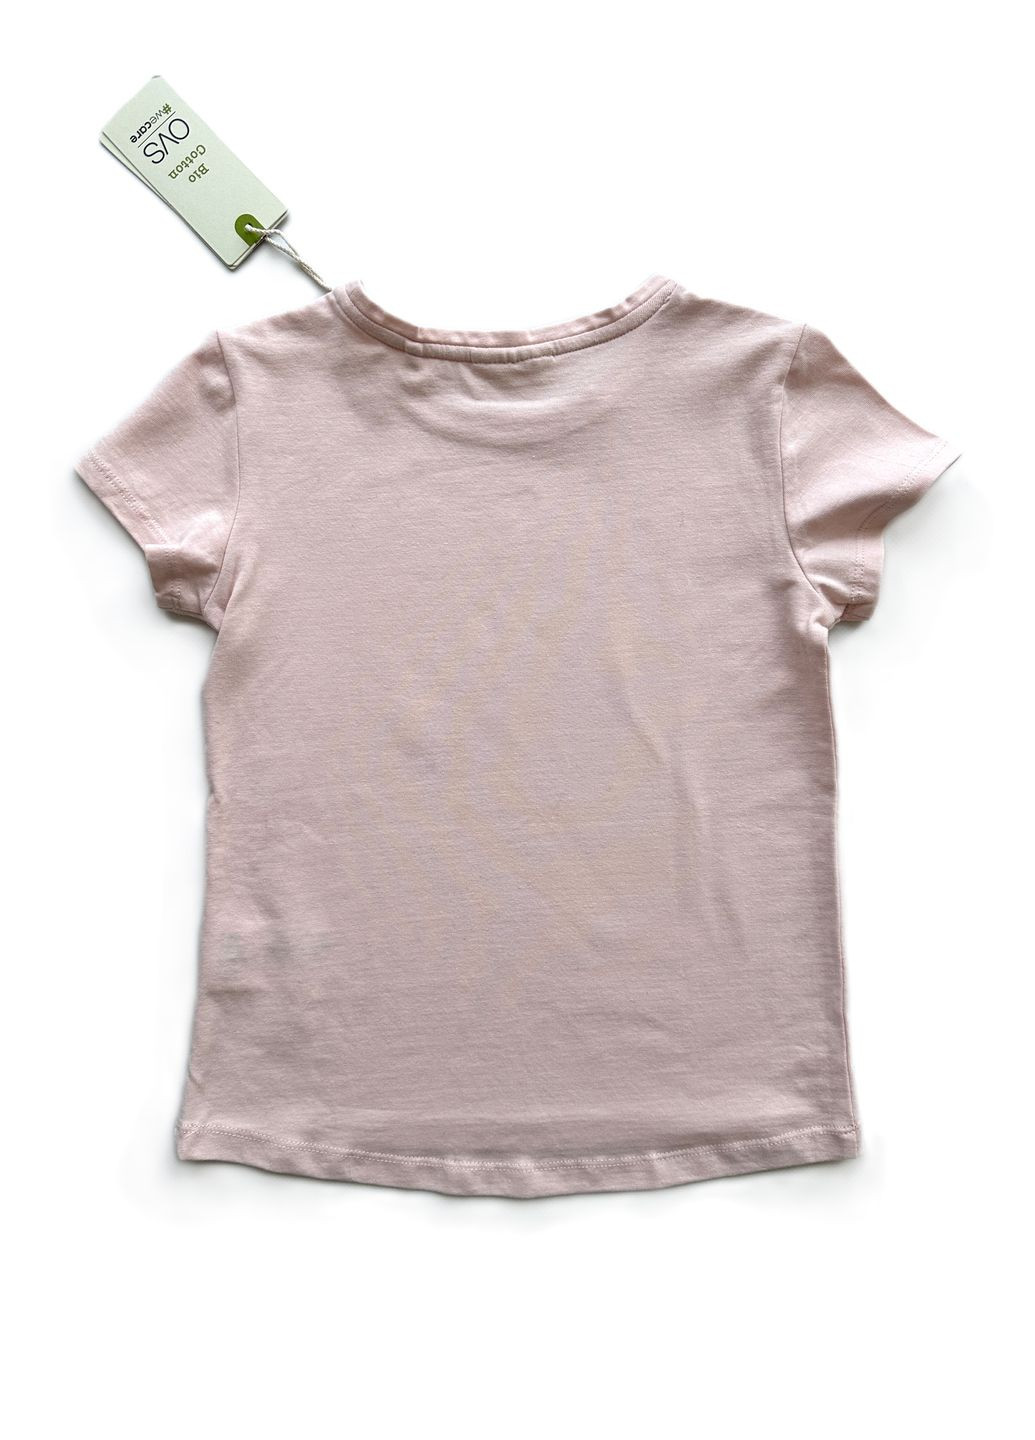 Пудровая летняя футболка для девочки 2000-20 пудровая базовая (116 см) OVS